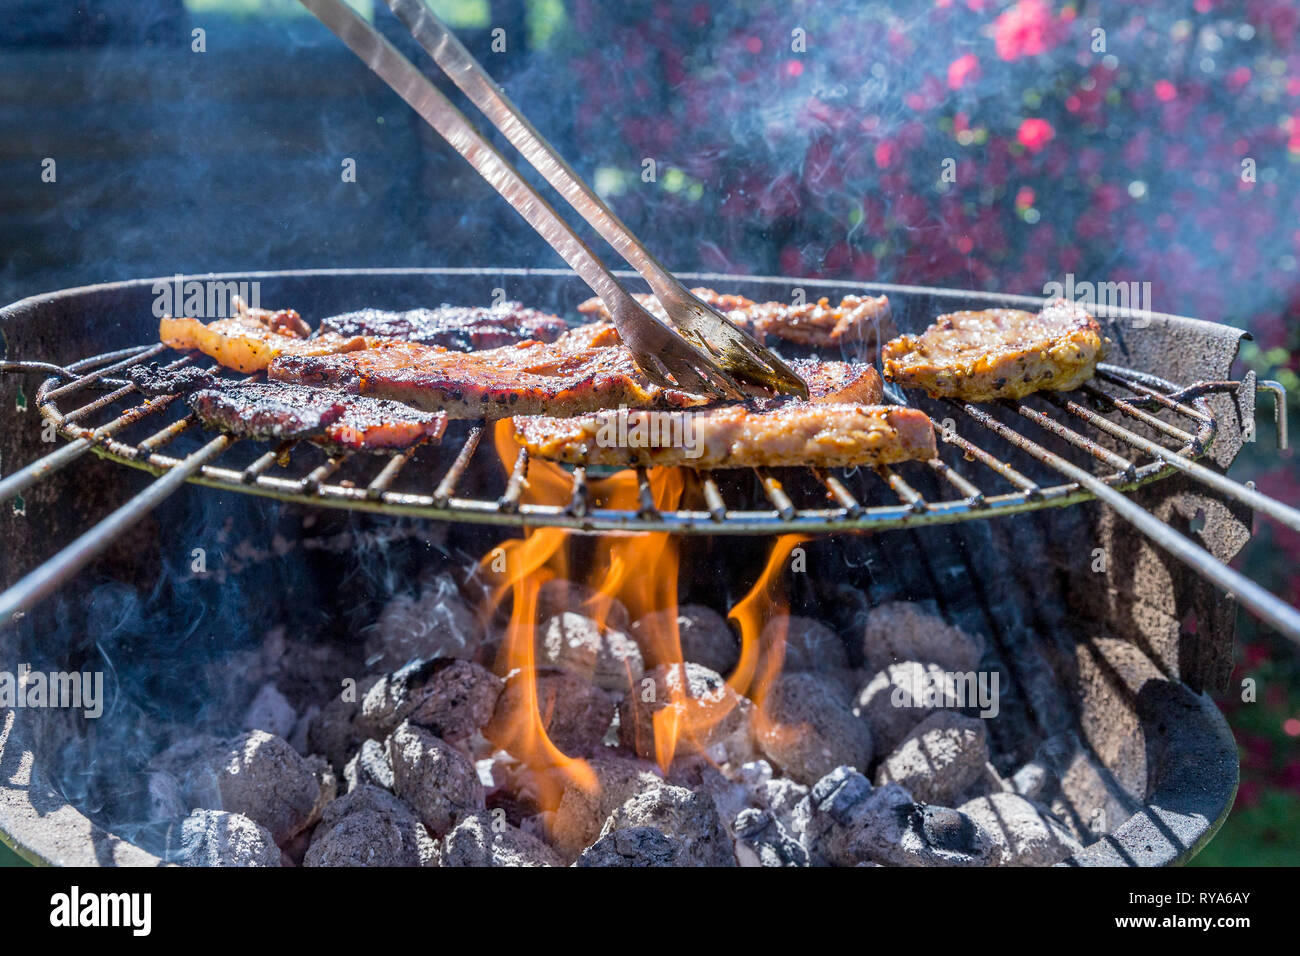 Bauchfleisch und Wuerstchen auf dem Grill, unter dem Grill lodern die Flammen, ein Fleischstueck wird umgedreht bei THEMENBILD Grillen, 06.05.2018 Fot Stock Photo